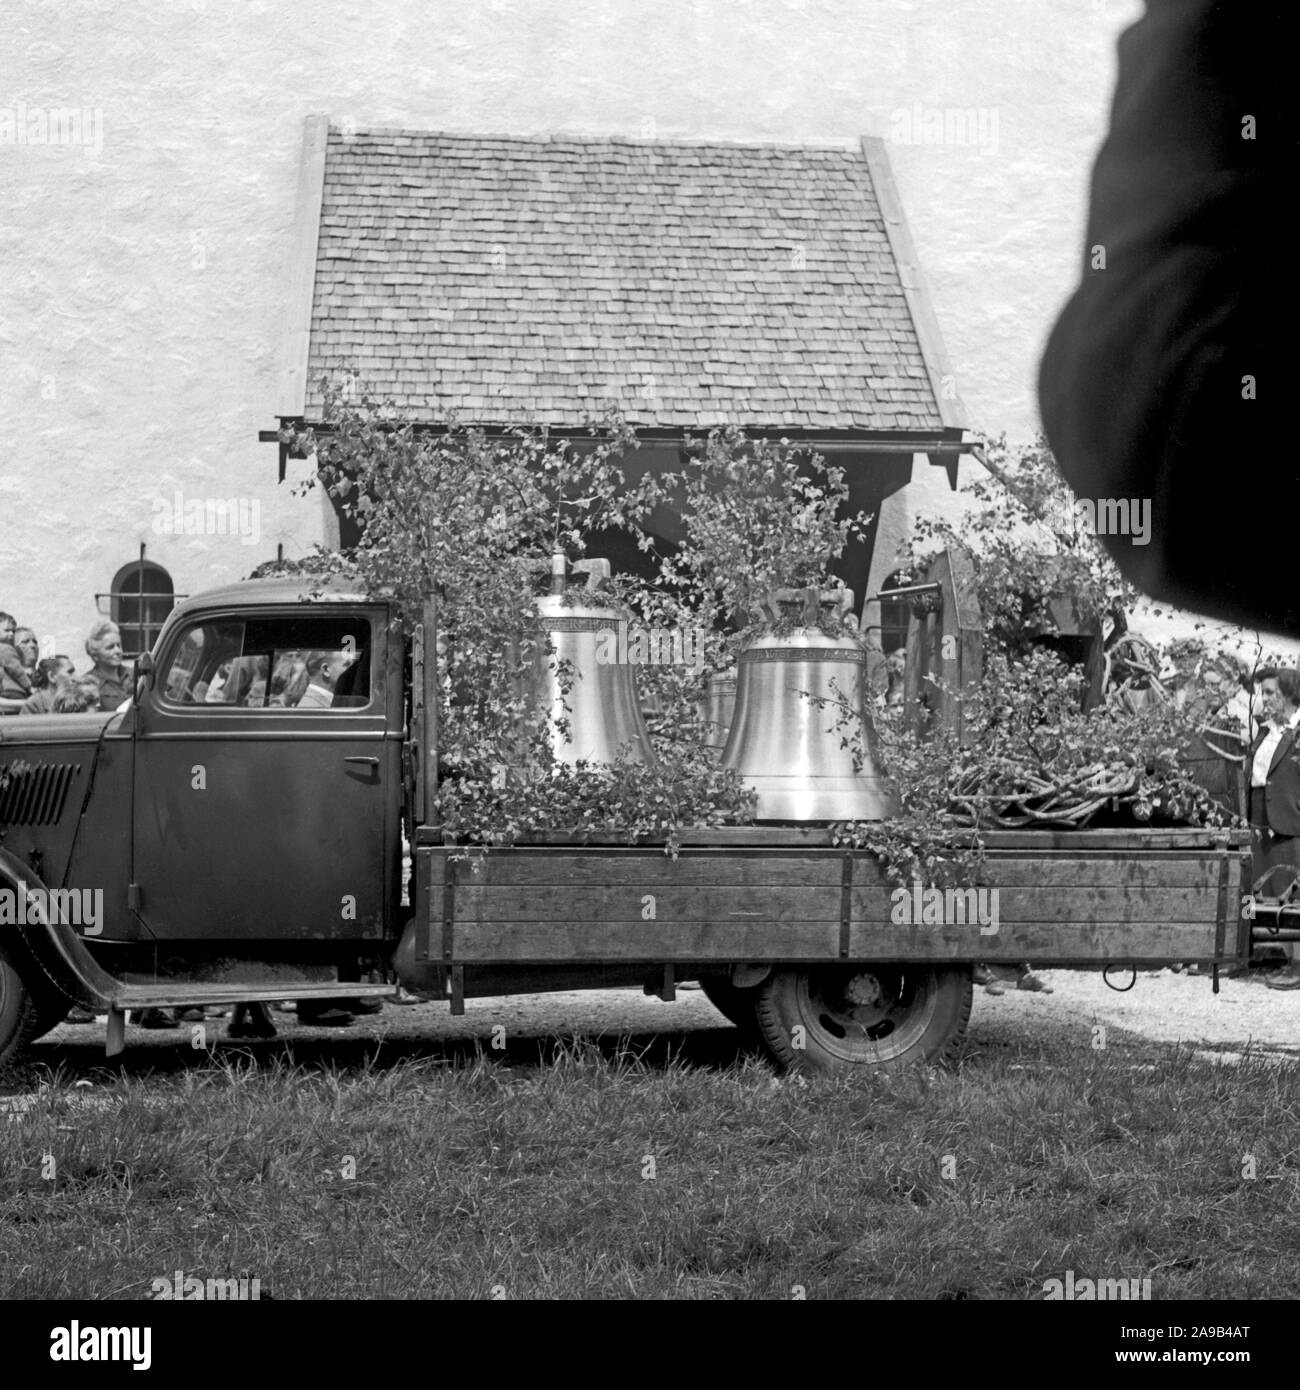 Una aldea cerca de Mittenwald obtiene una entrega de nuevas campanas para su iglesia, Alemania 1955 Foto de stock